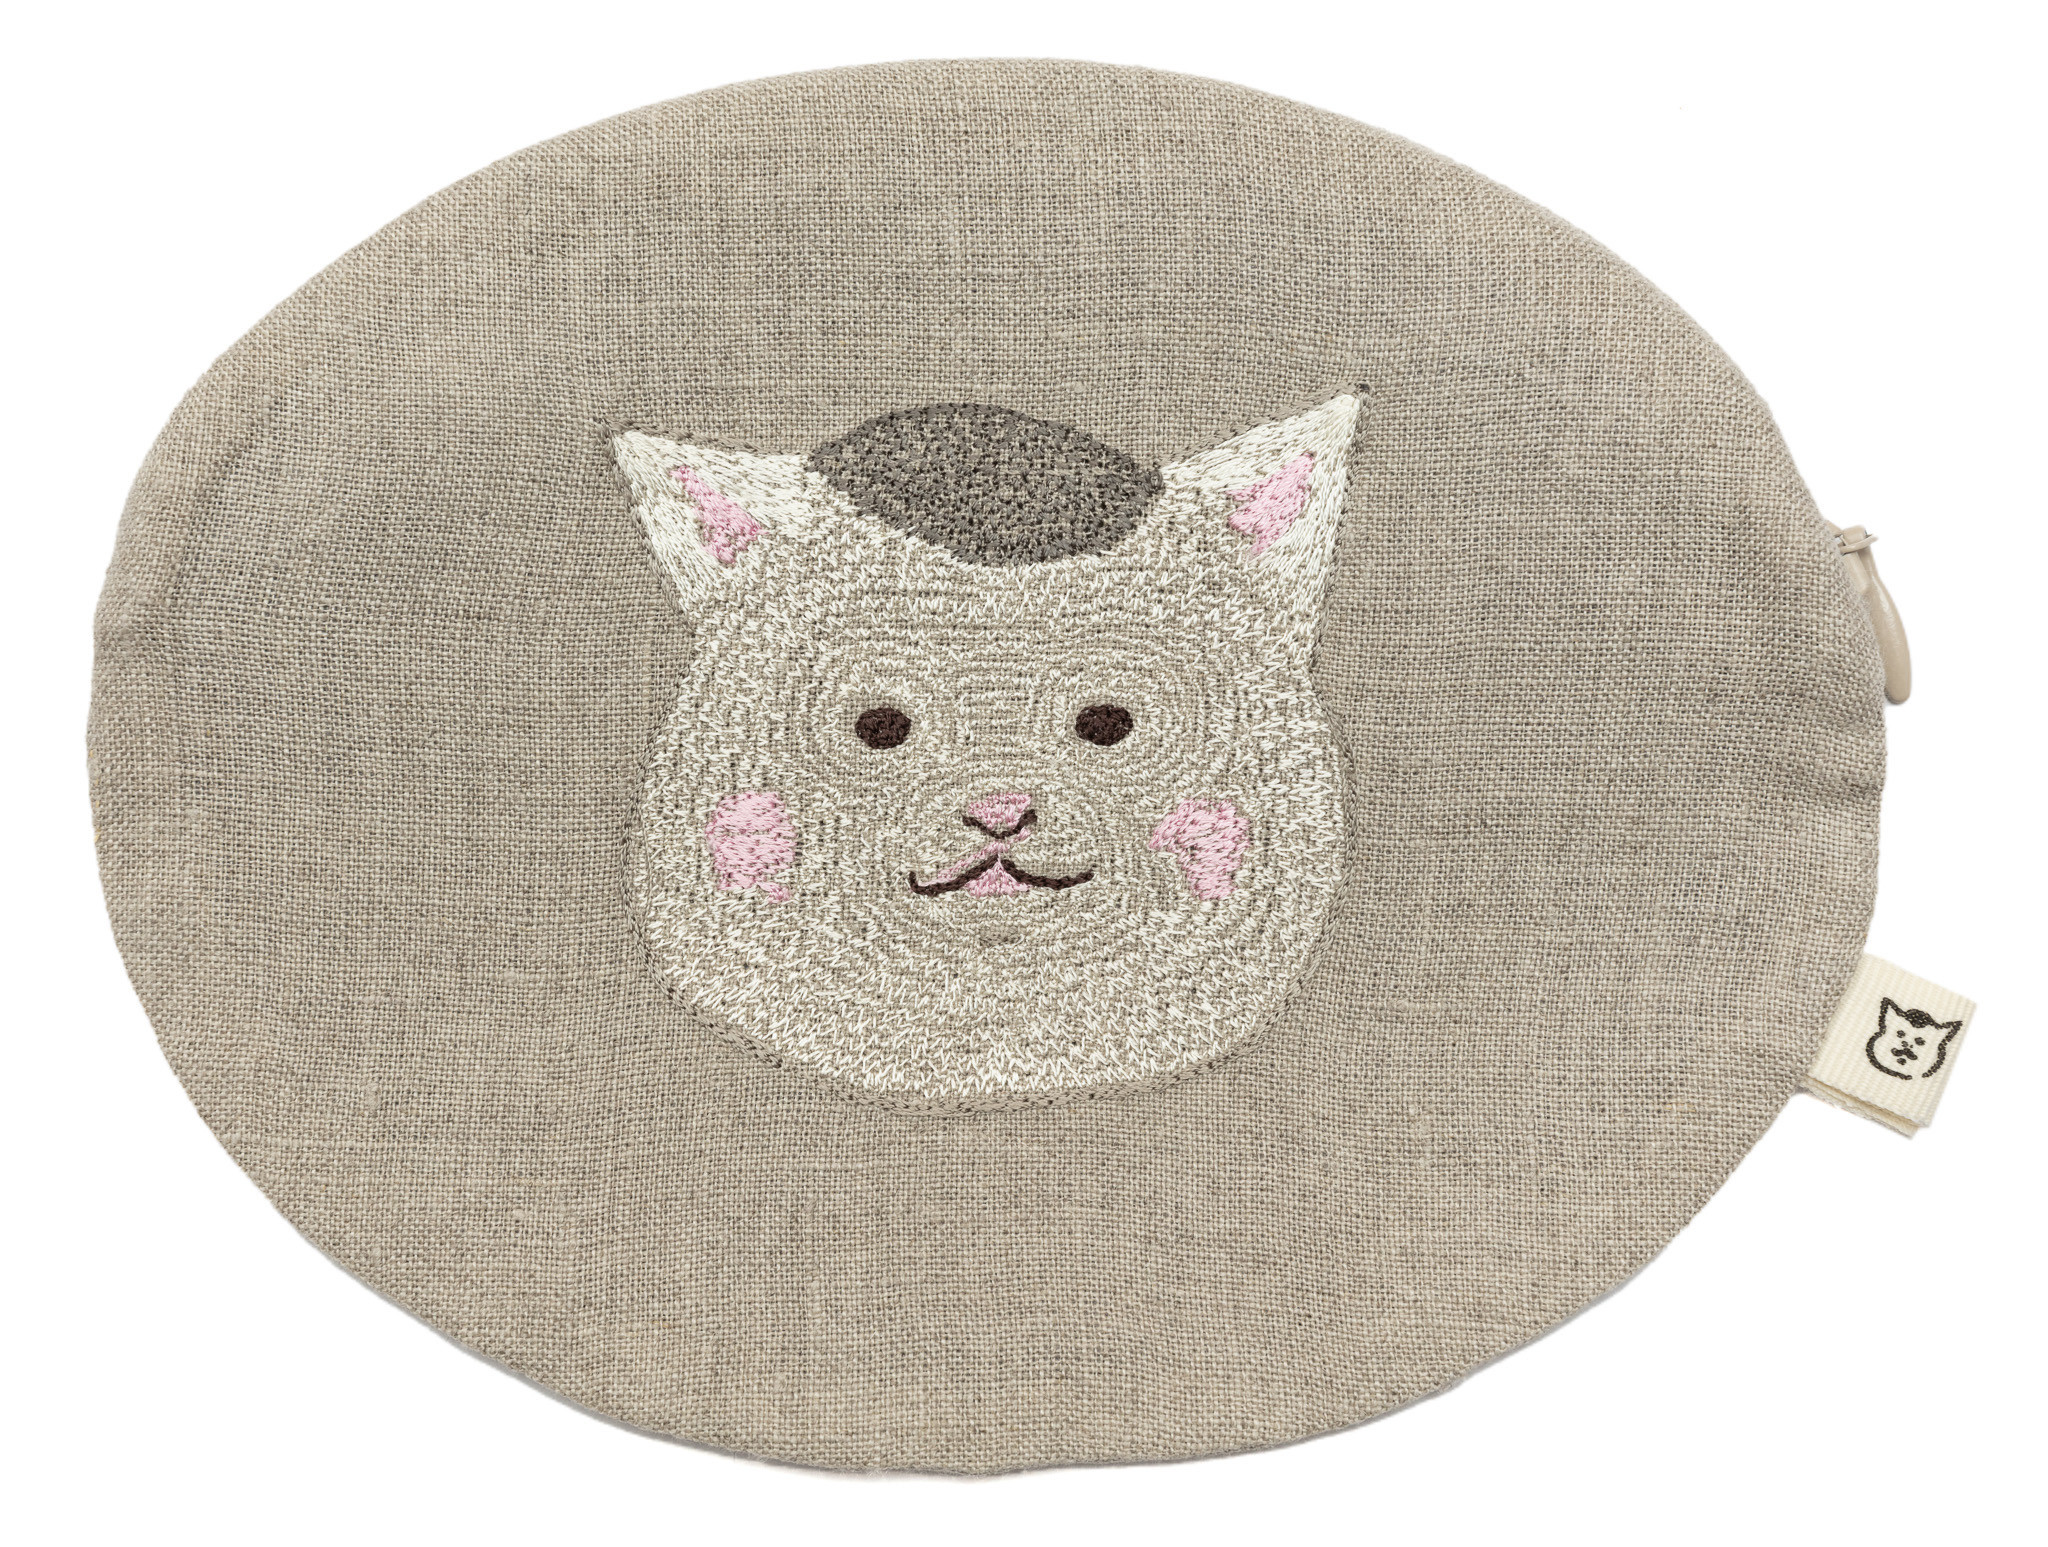 きょうの猫村さん」を刺繍したクッションやポーチが発売、コーラル 